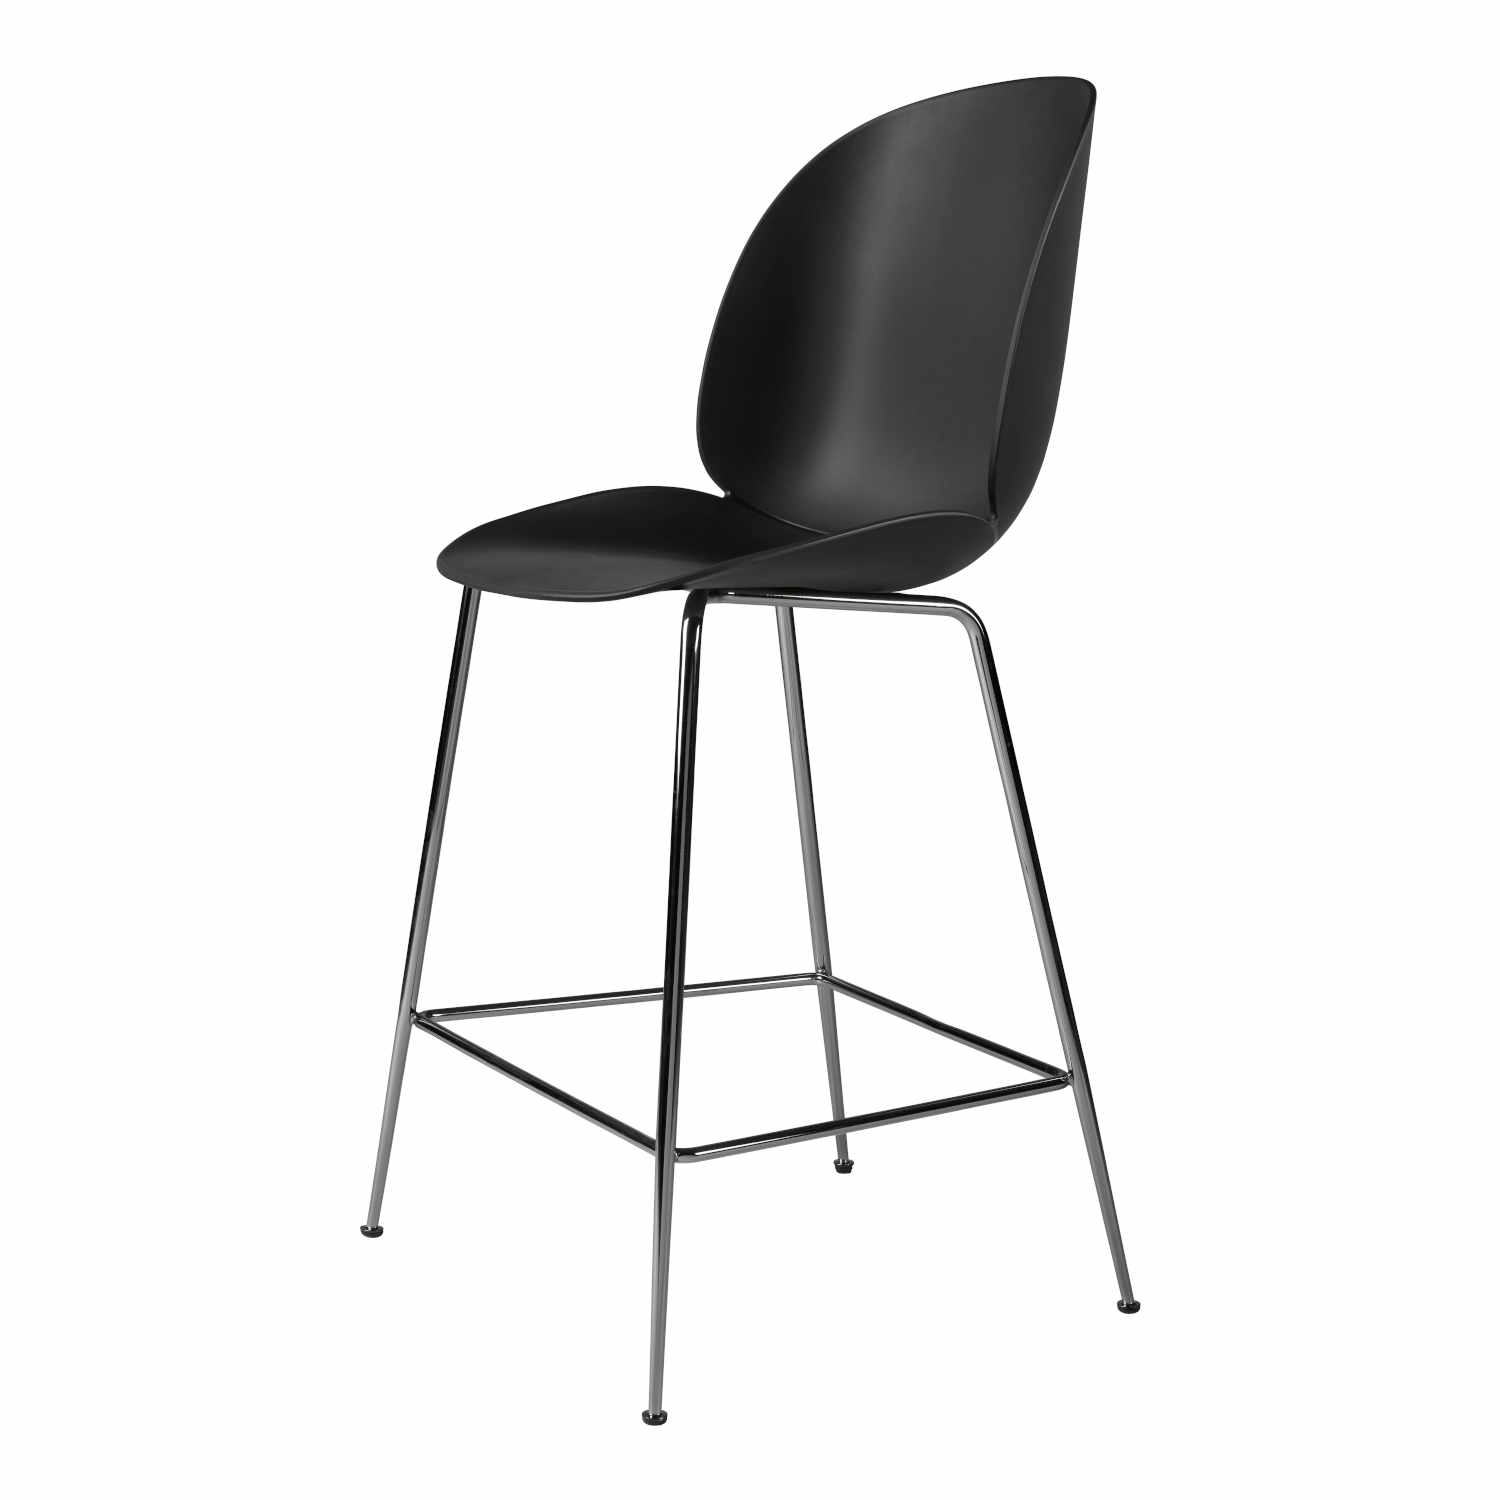 Beetle Counter Chair Conic Barhocker, Grösse sitzhöhe 63,5 cm, Sitzschale Plastic Shell pastel green, Untergestell Conic Base black chrome von GUBI